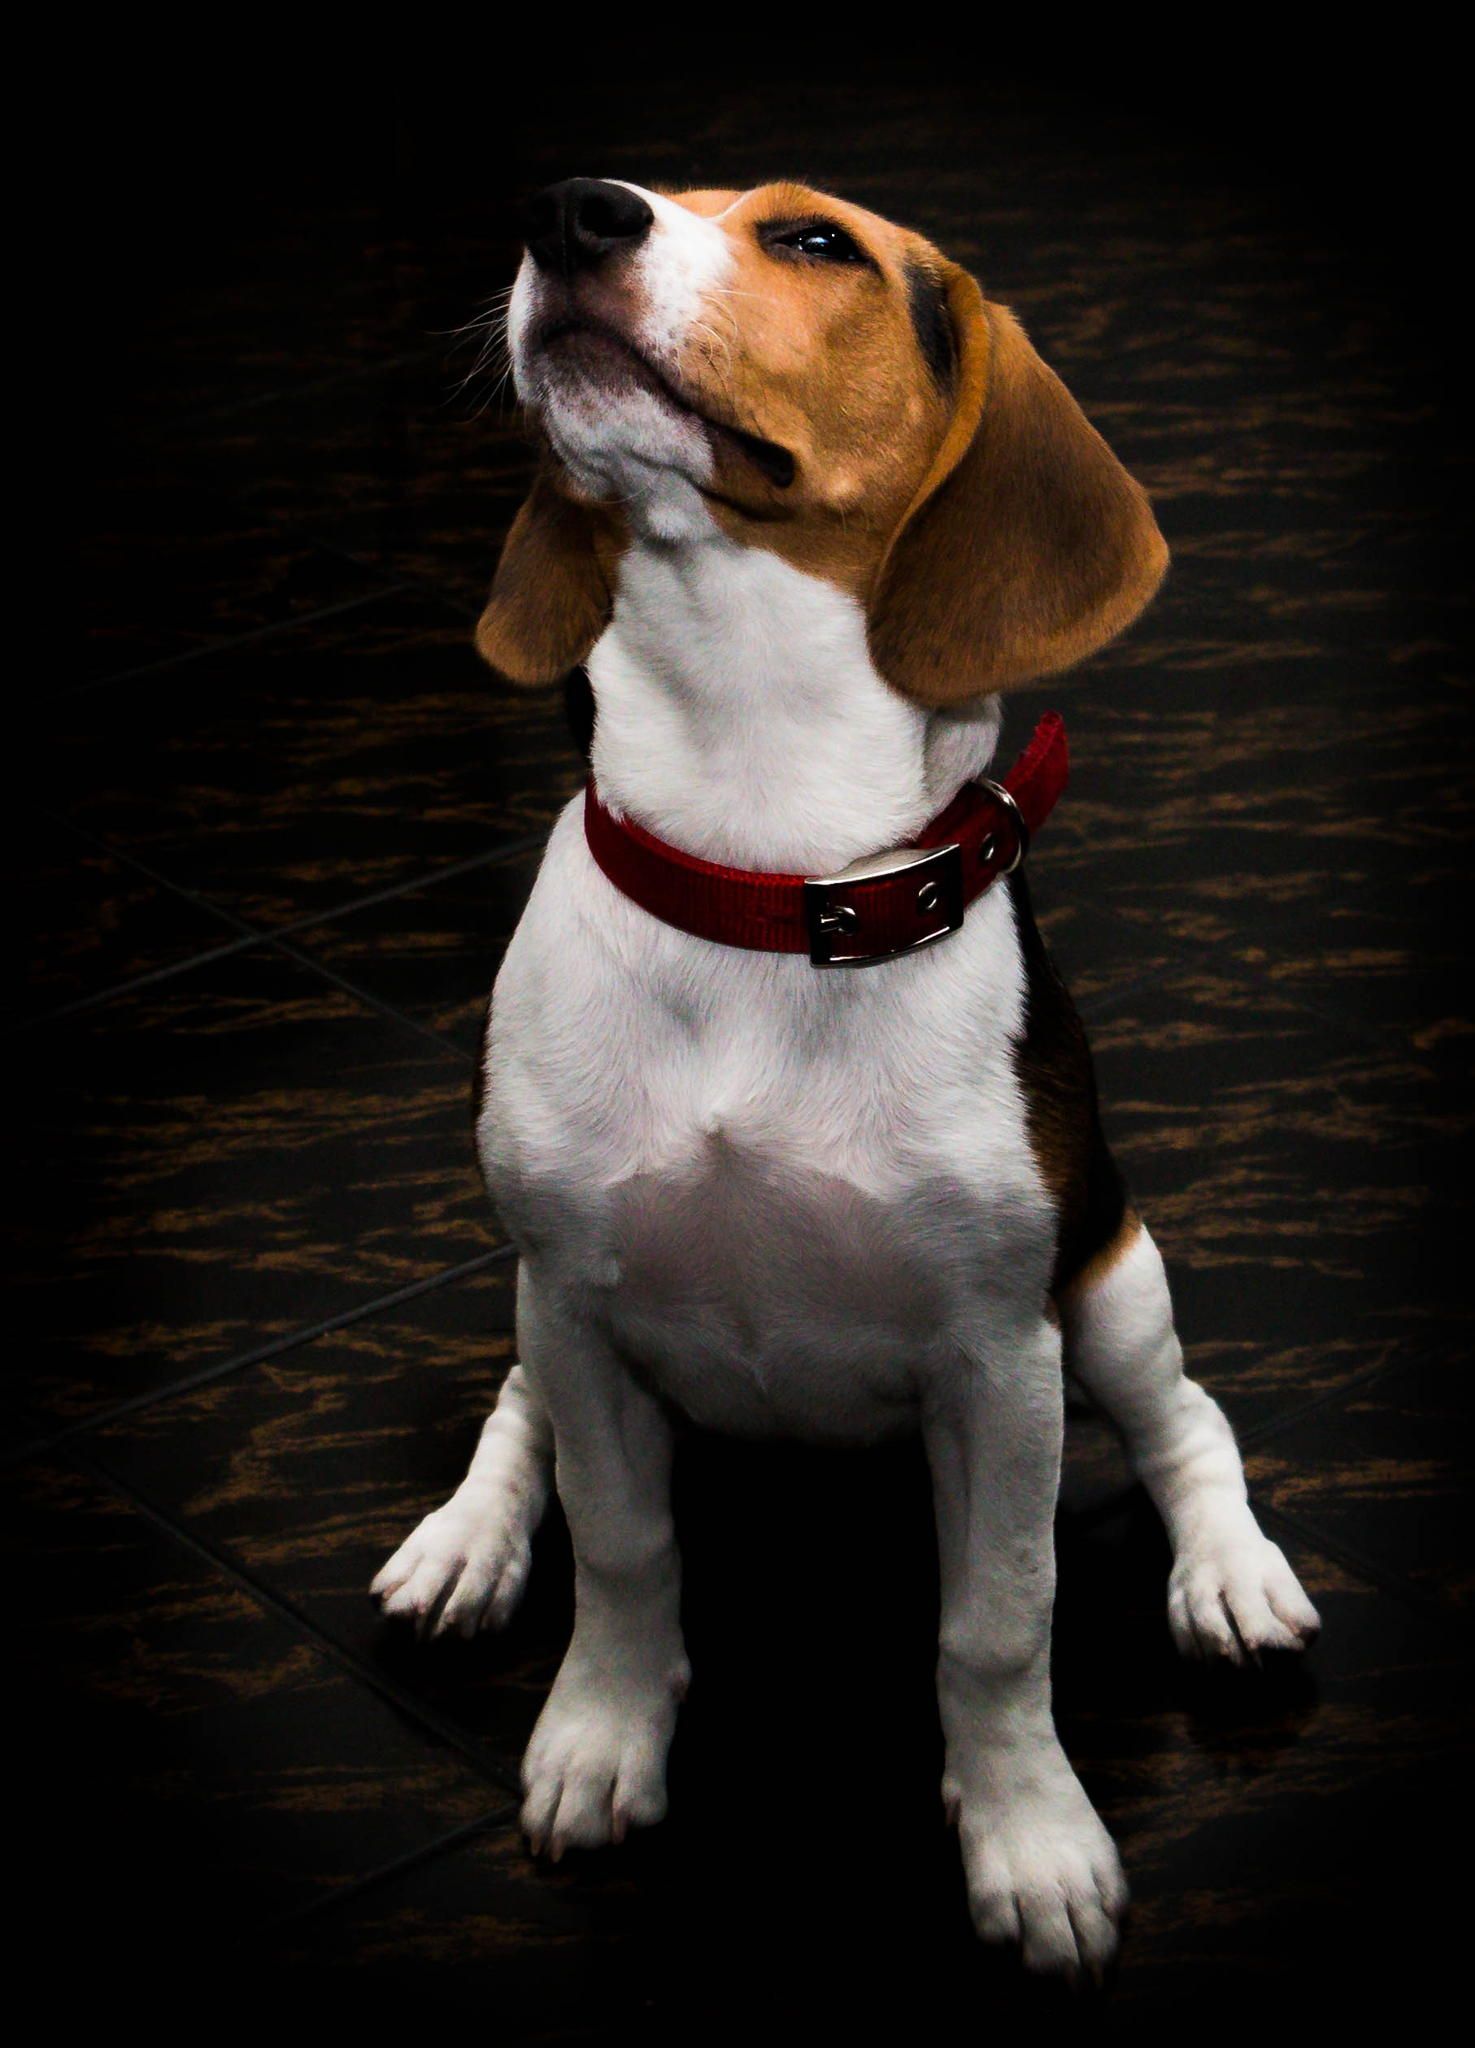 Geralmente o Beagle tem a barriguinha e o peito brancos